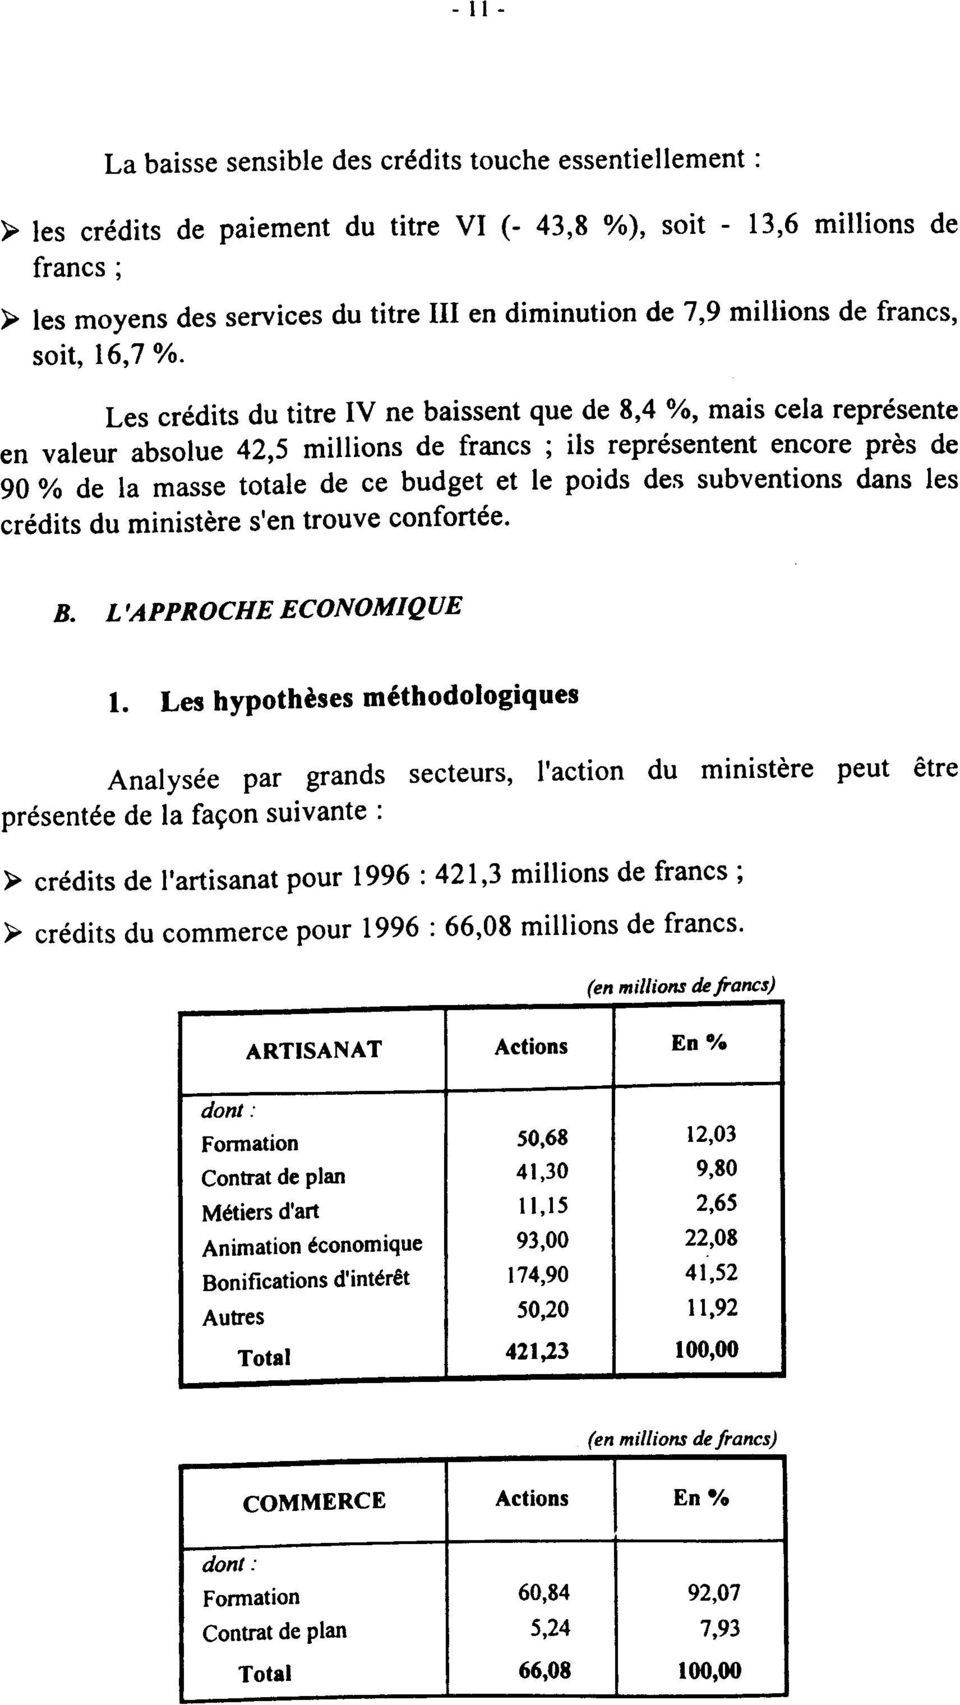 Les crédits du titre IV ne baissent que de 8,4 %, mais cela représente en valeur absolue 42,5 millions de francs ; ils représentent encore près de 90 % de la masse totale de ce budget et le